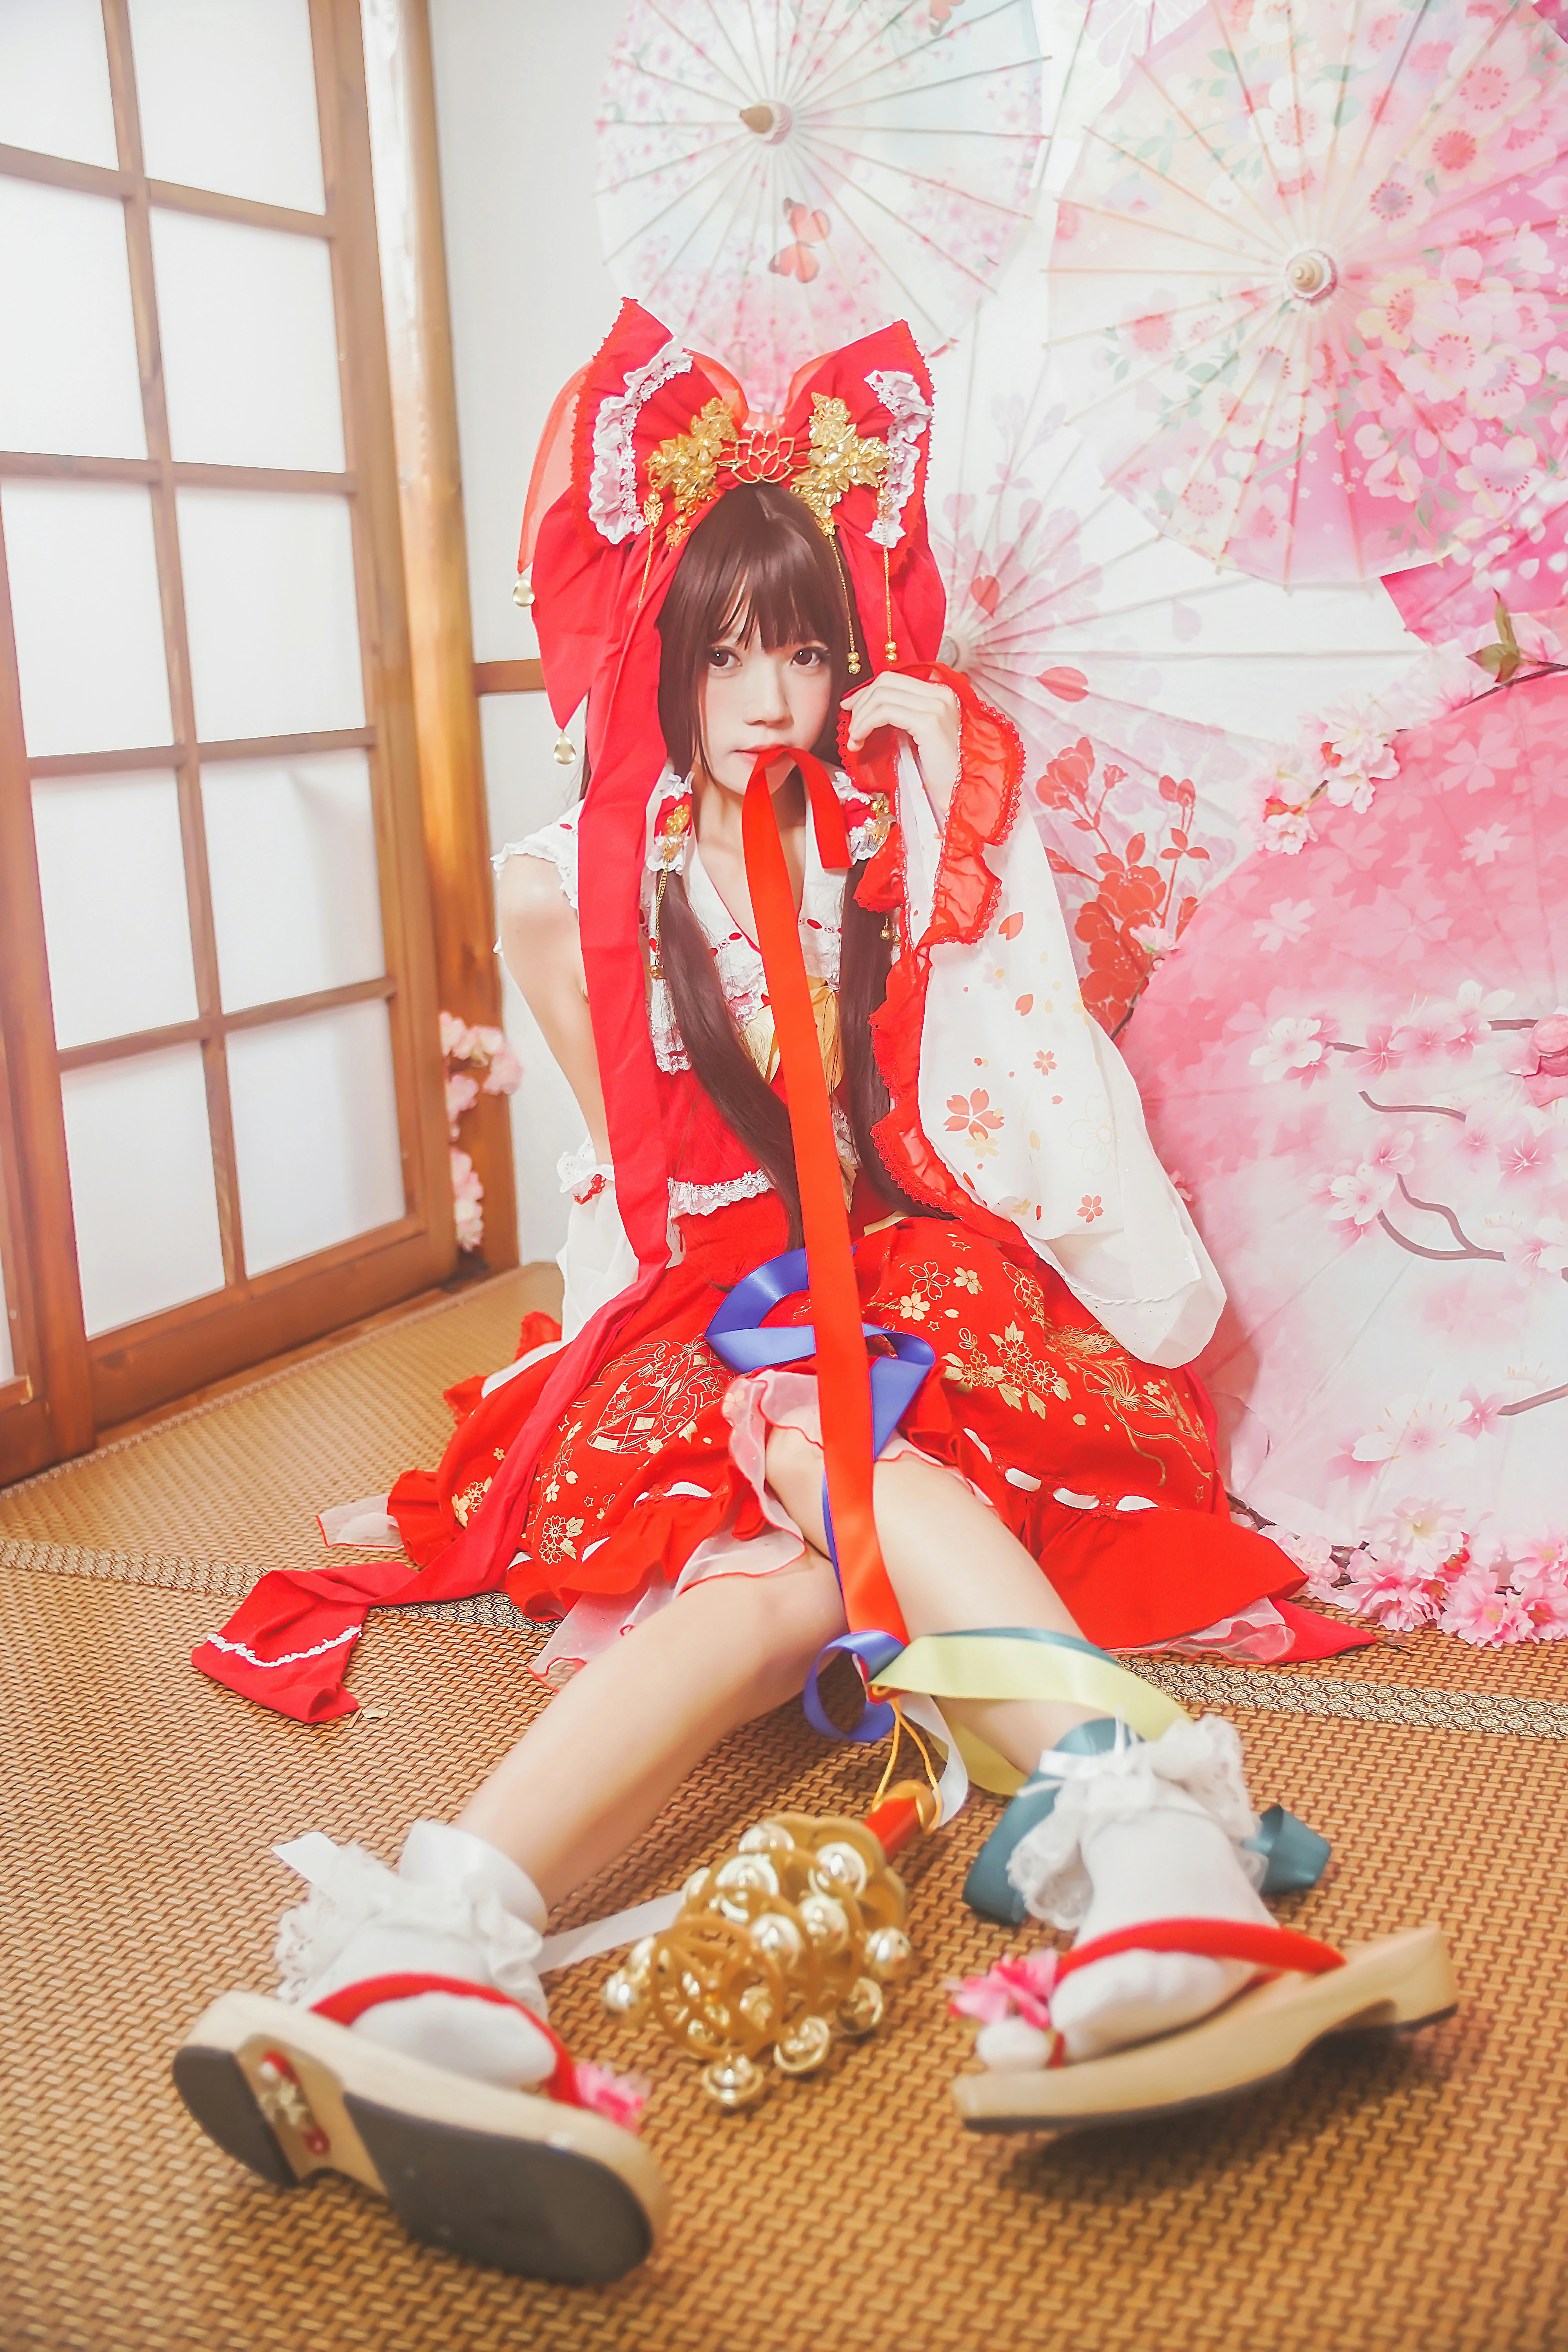 清纯少女小萝莉 桜桃喵 红色连身制服裙 和风写真,0017